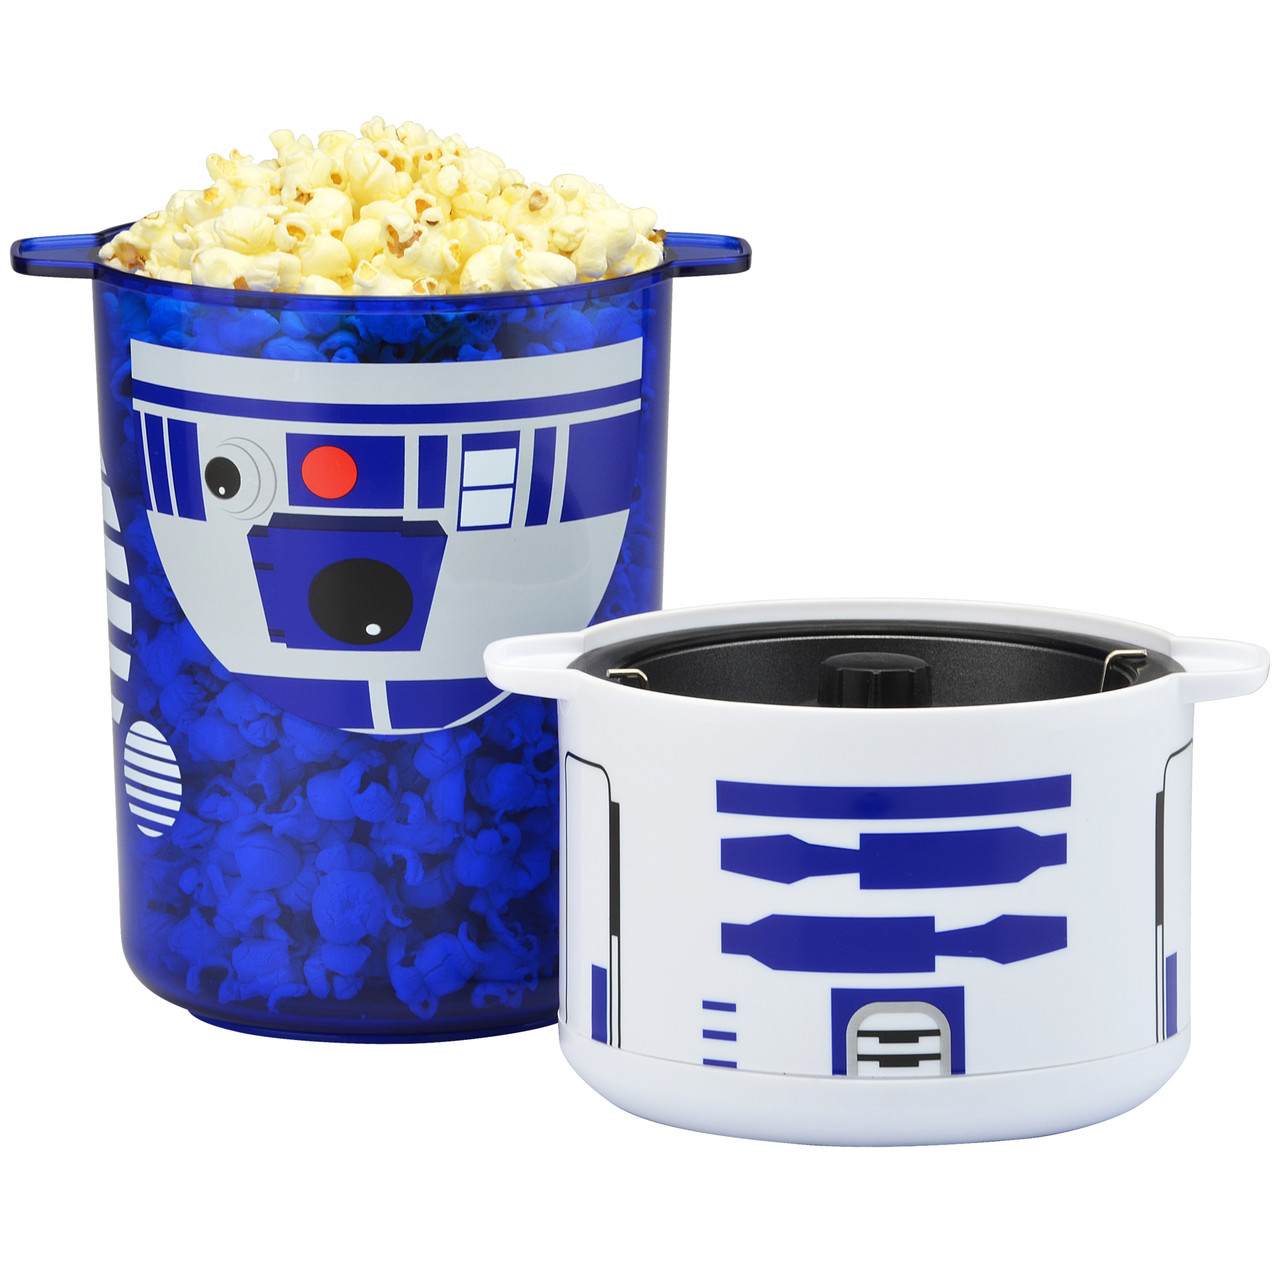 STAR WARS LSW-60CN R2-D2 Mini Stir Popcorn Popper